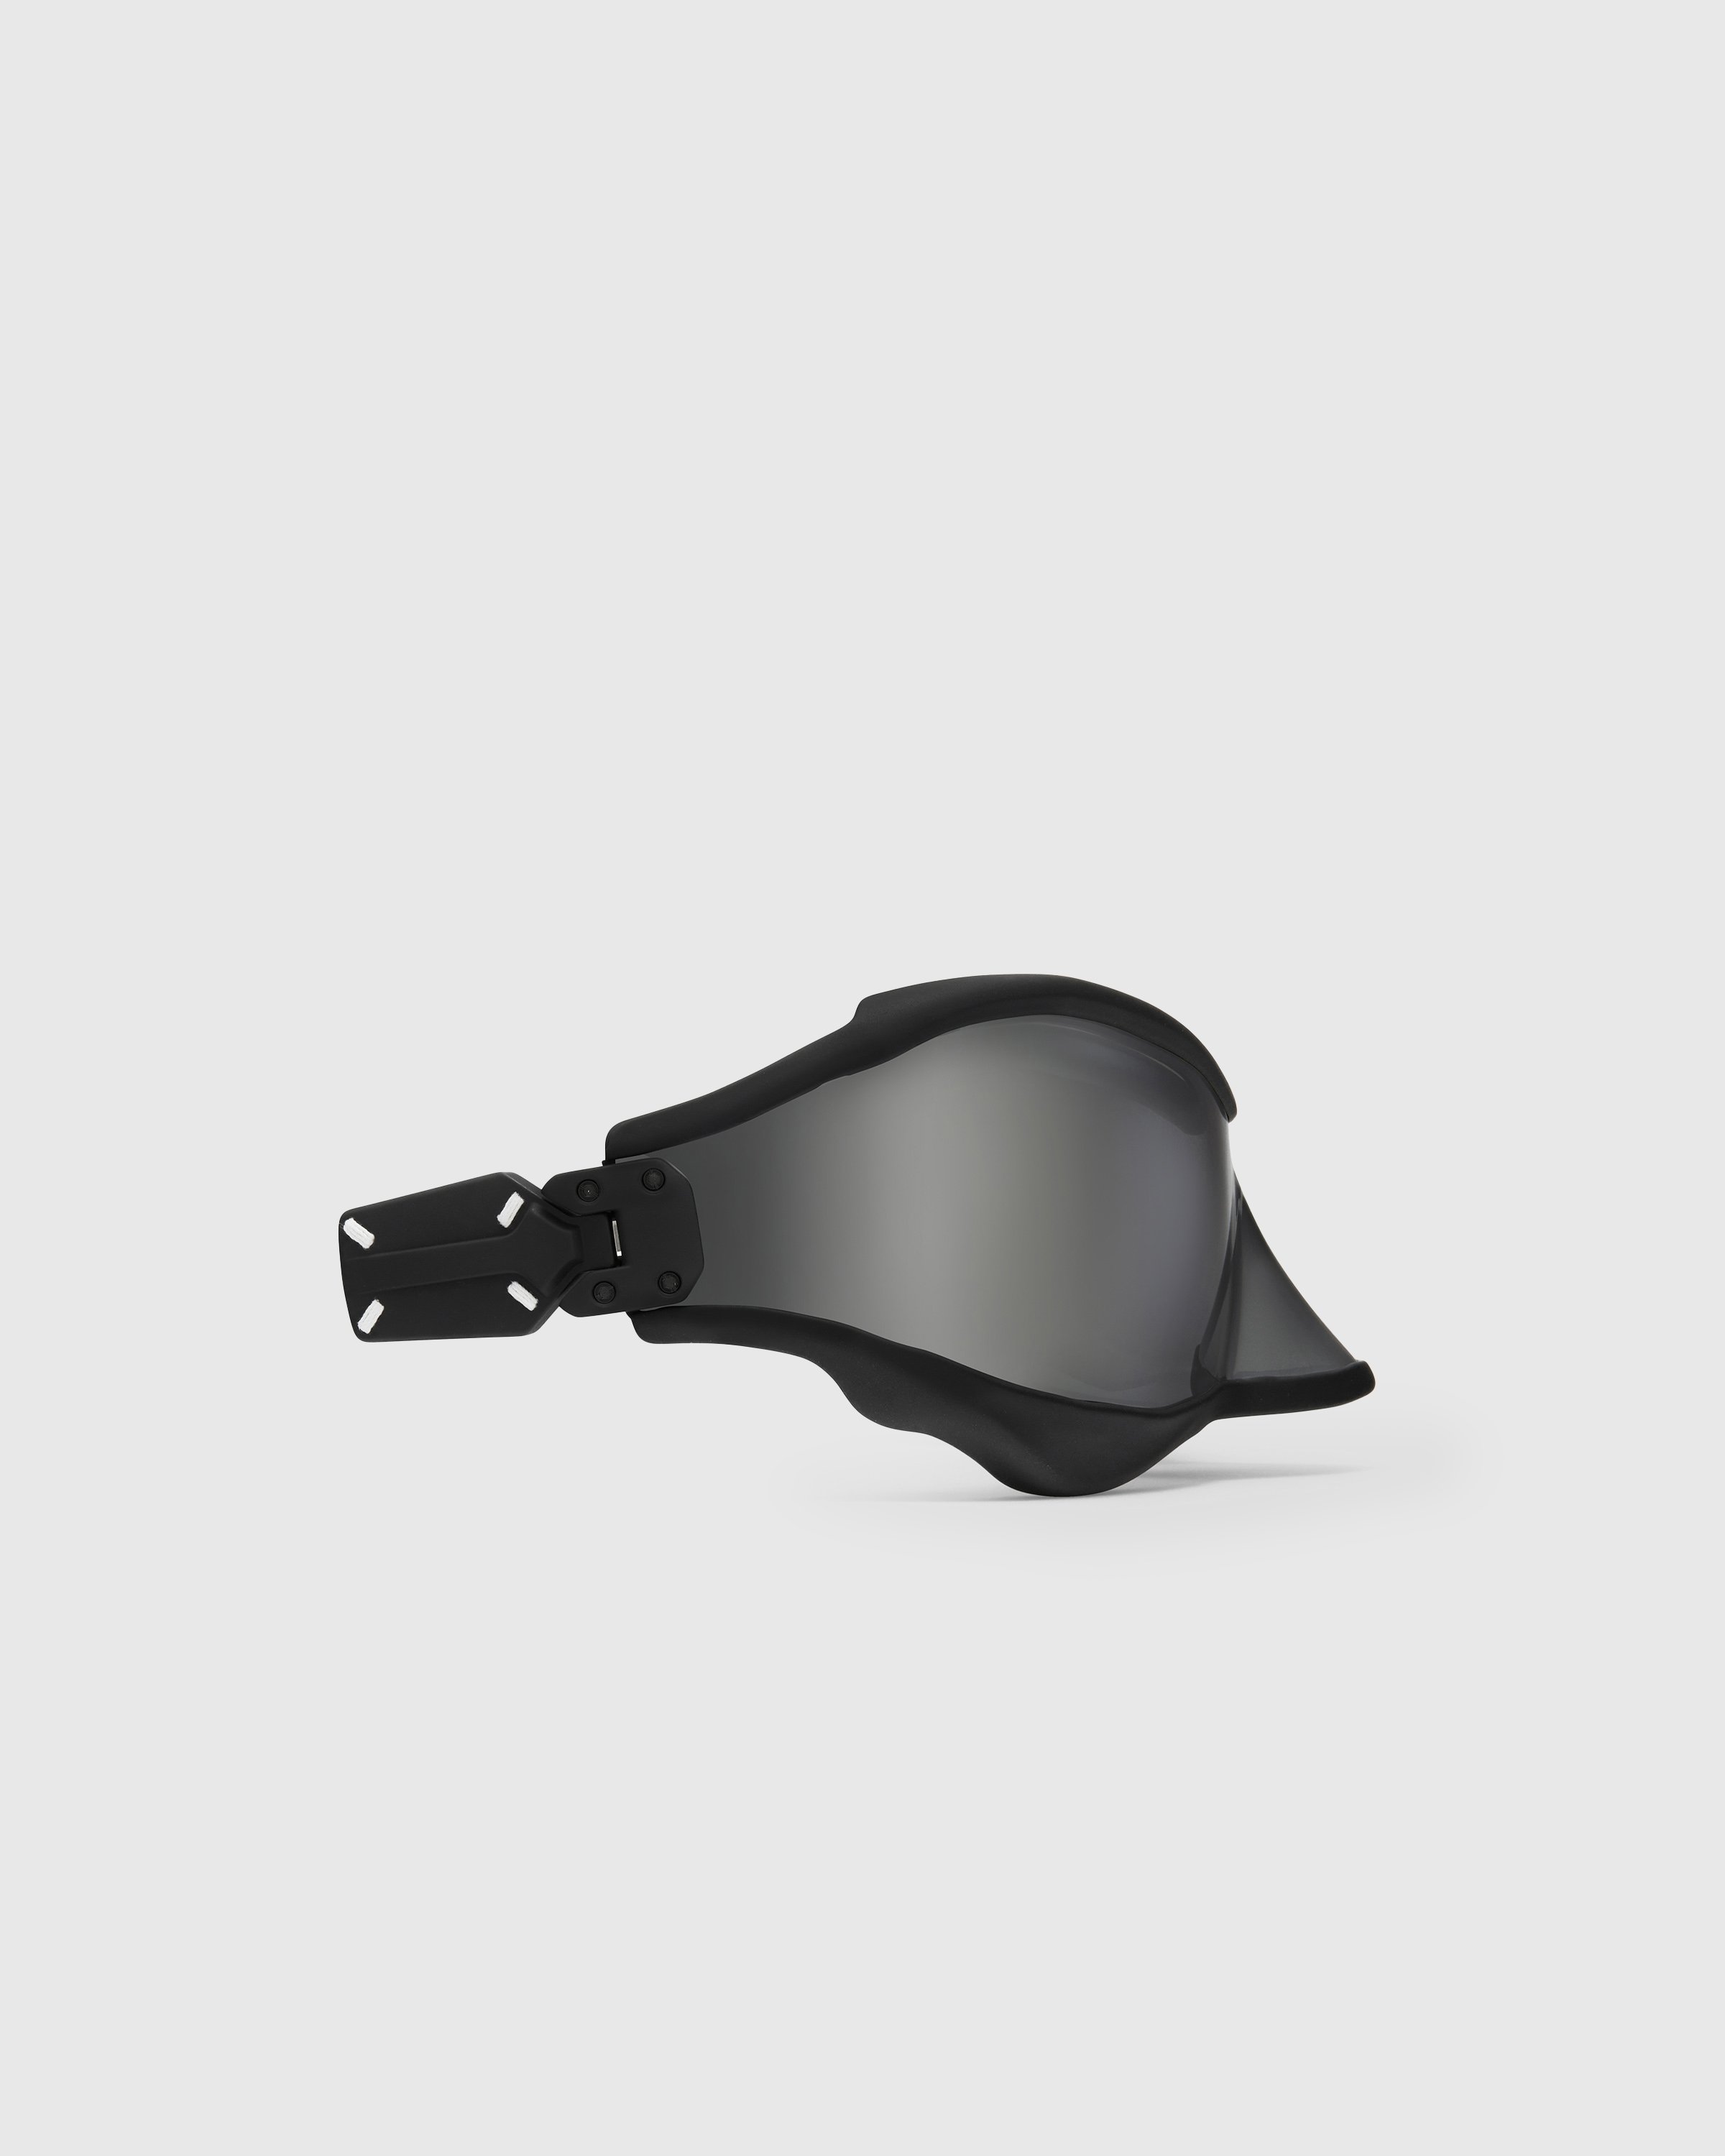 Maison Margiela x Gentle Monster - Sunglasses MM101-M04 - Accessories - Black - Image 3